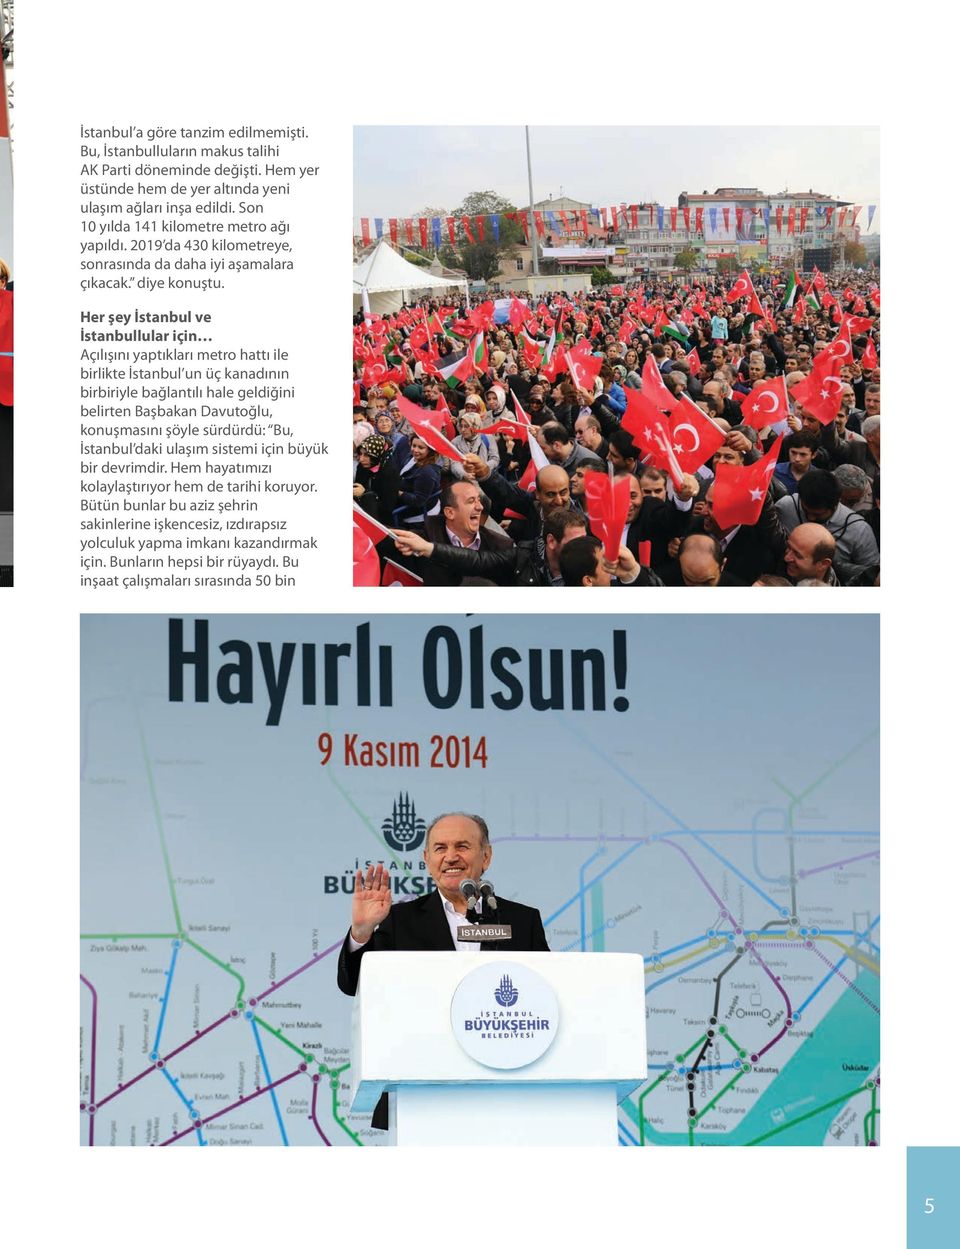 Her şey İstanbul ve İstanbullular için Açılışını yaptıkları metro hattı ile birlikte İstanbul un üç kanadının birbiriyle bağlantılı hale geldiğini belirten Başbakan Davutoğlu, konuşmasını şöyle